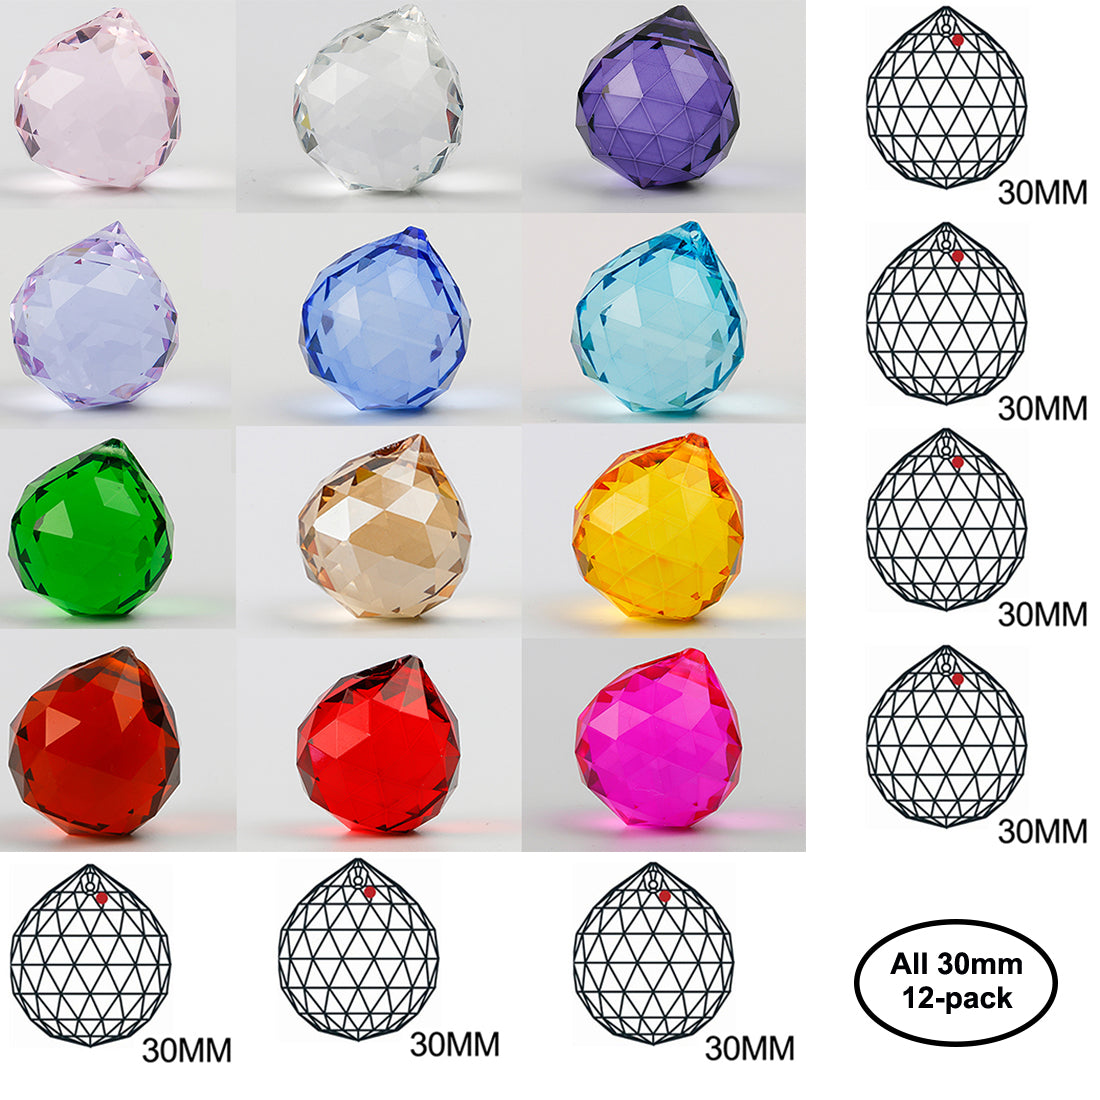 H&D Crystal suncatcher 30mm Vintage Feng Shui Faceted Decorating Crystal Ball Prism Pendant Suncatcher Multi-Color Hanging Pendant Suncatcher 12pcs